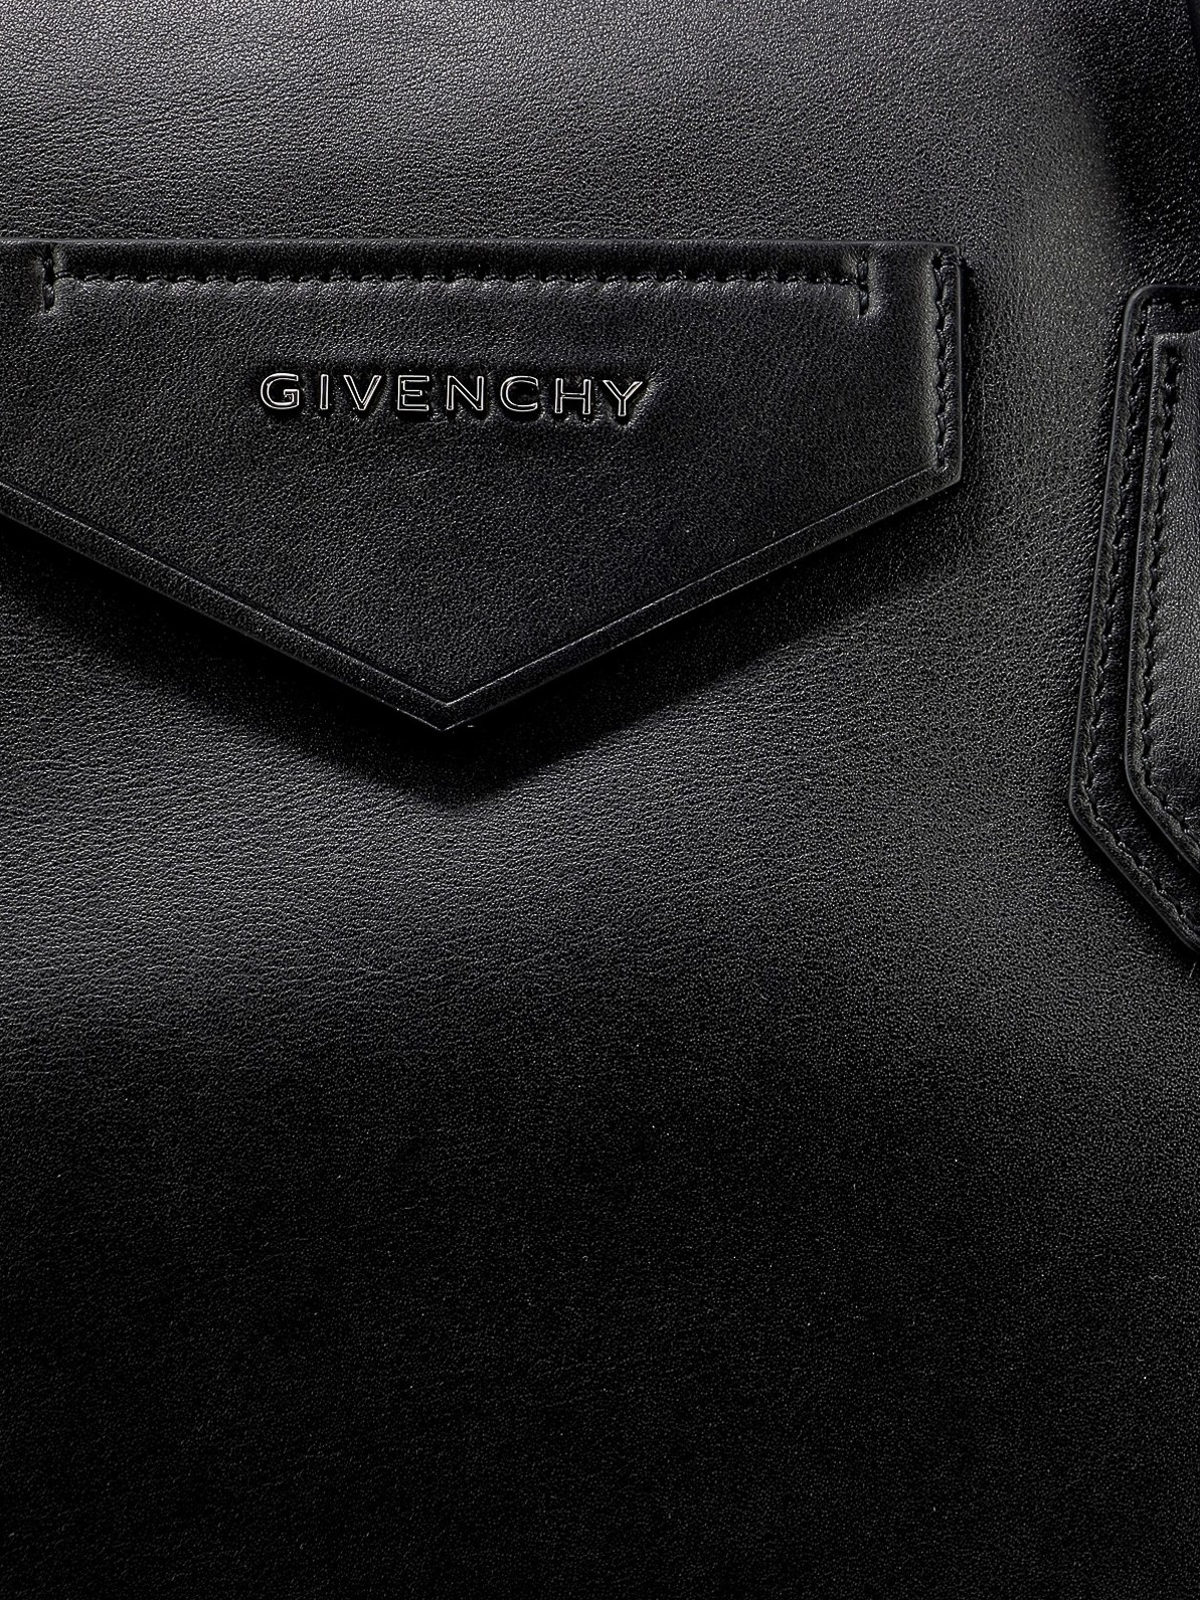 Givenchy Black Leather Studded Antigona Wristlet Clutch Givenchy